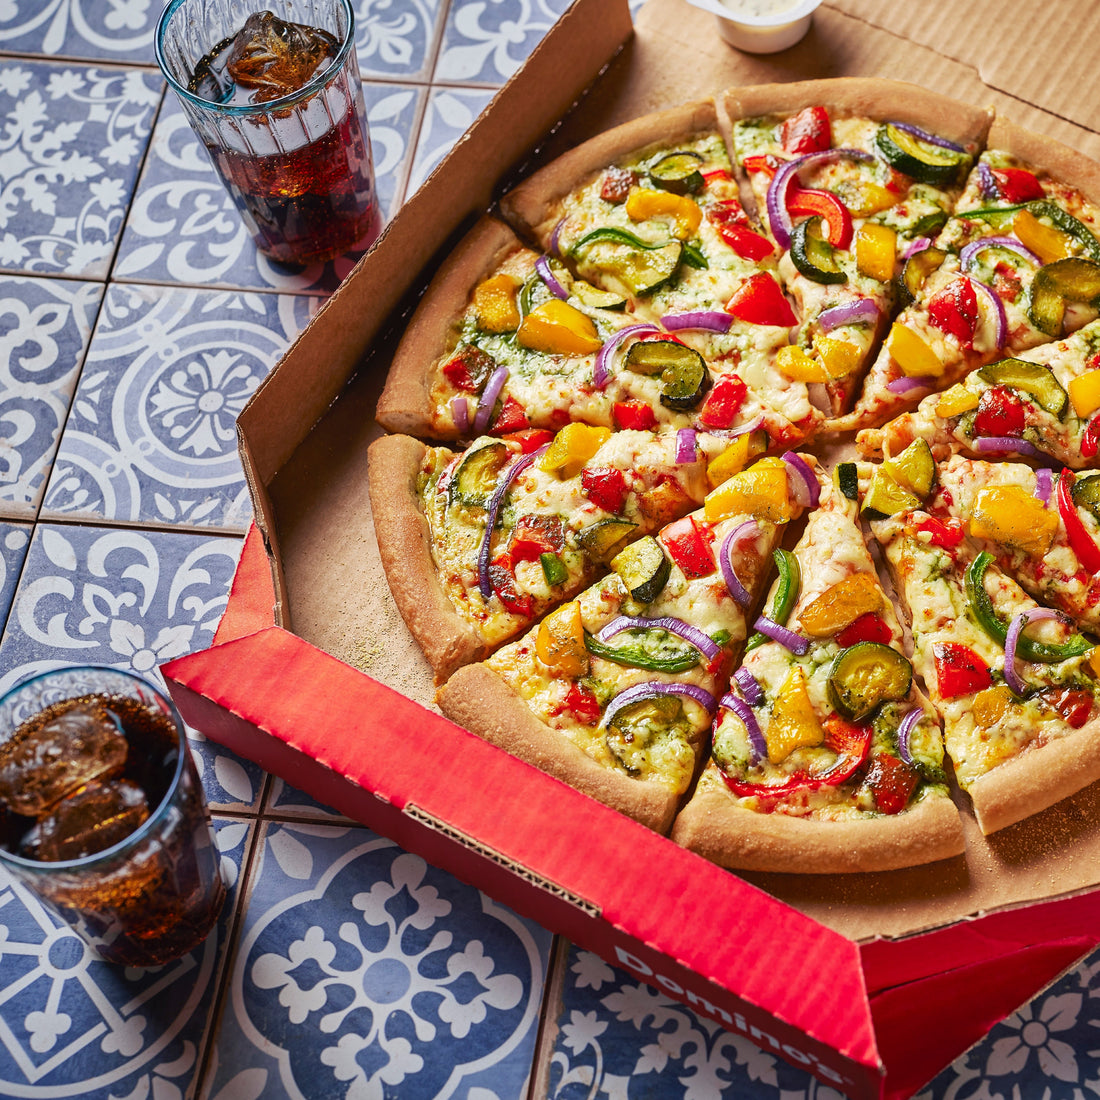 Domino’s deliver an all-new Vegi Pesto pizza